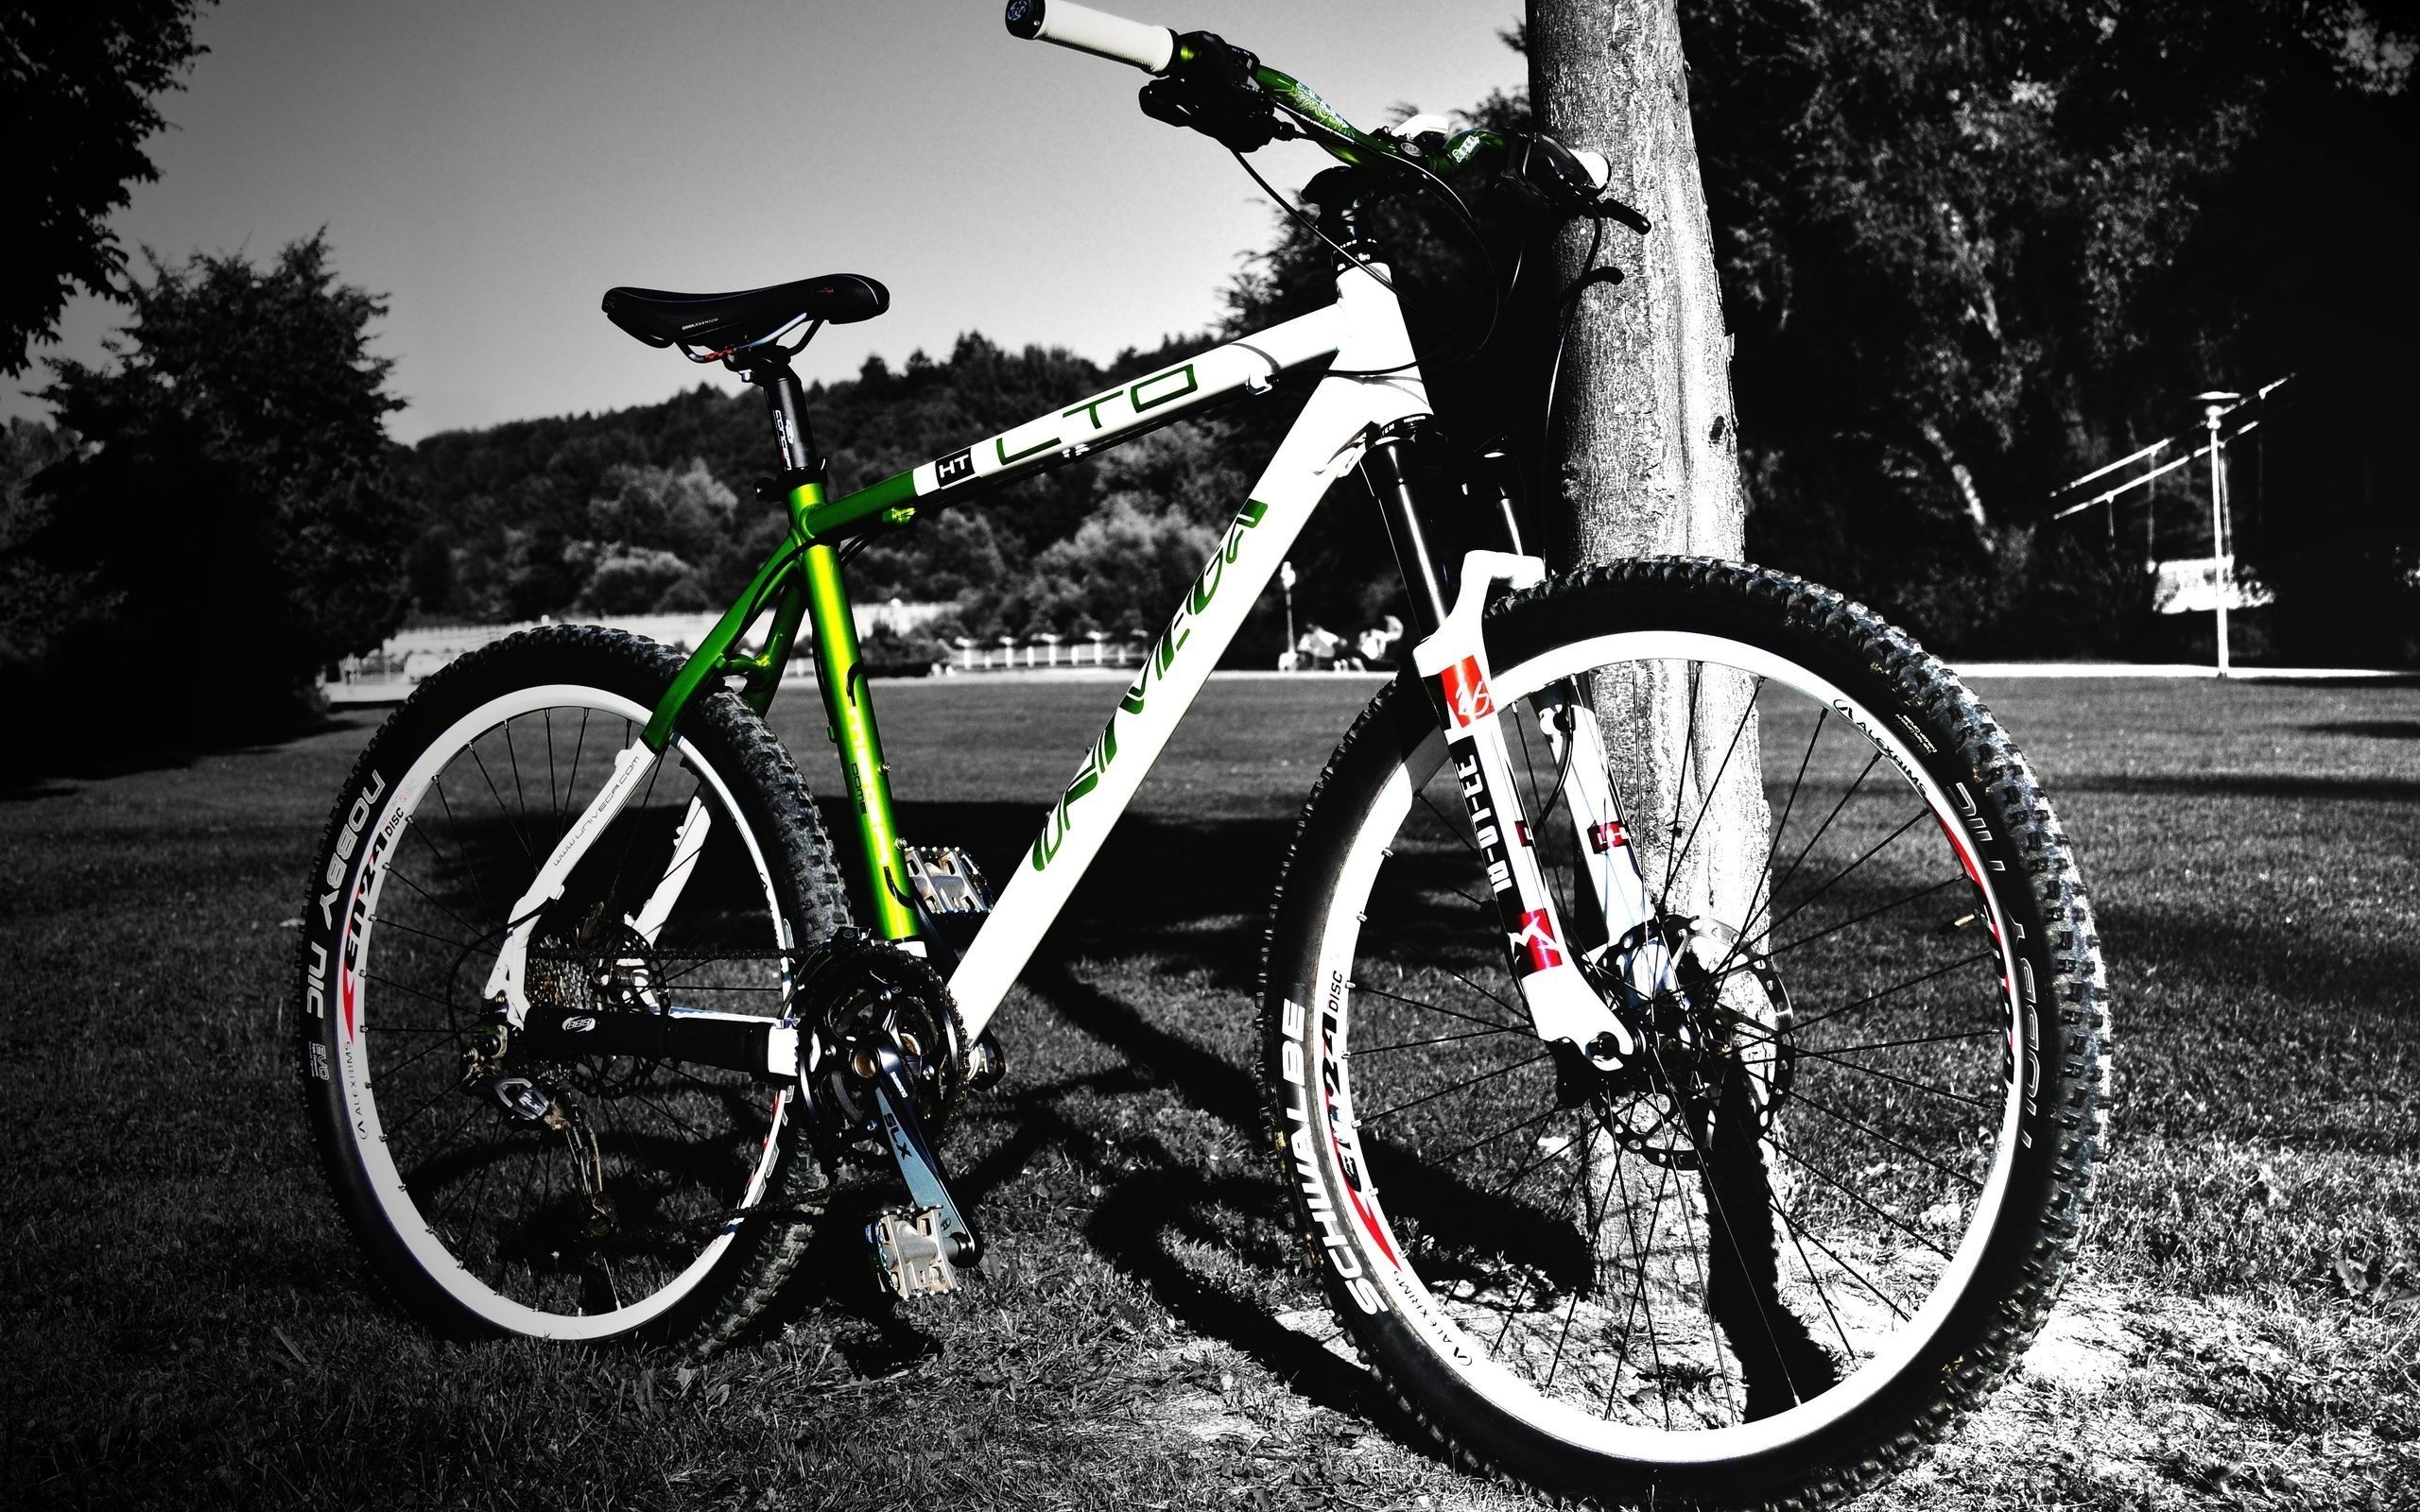 bisiklet wallpaper,land vehicle,bicycle,bicycle wheel,bicycle frame,vehicle